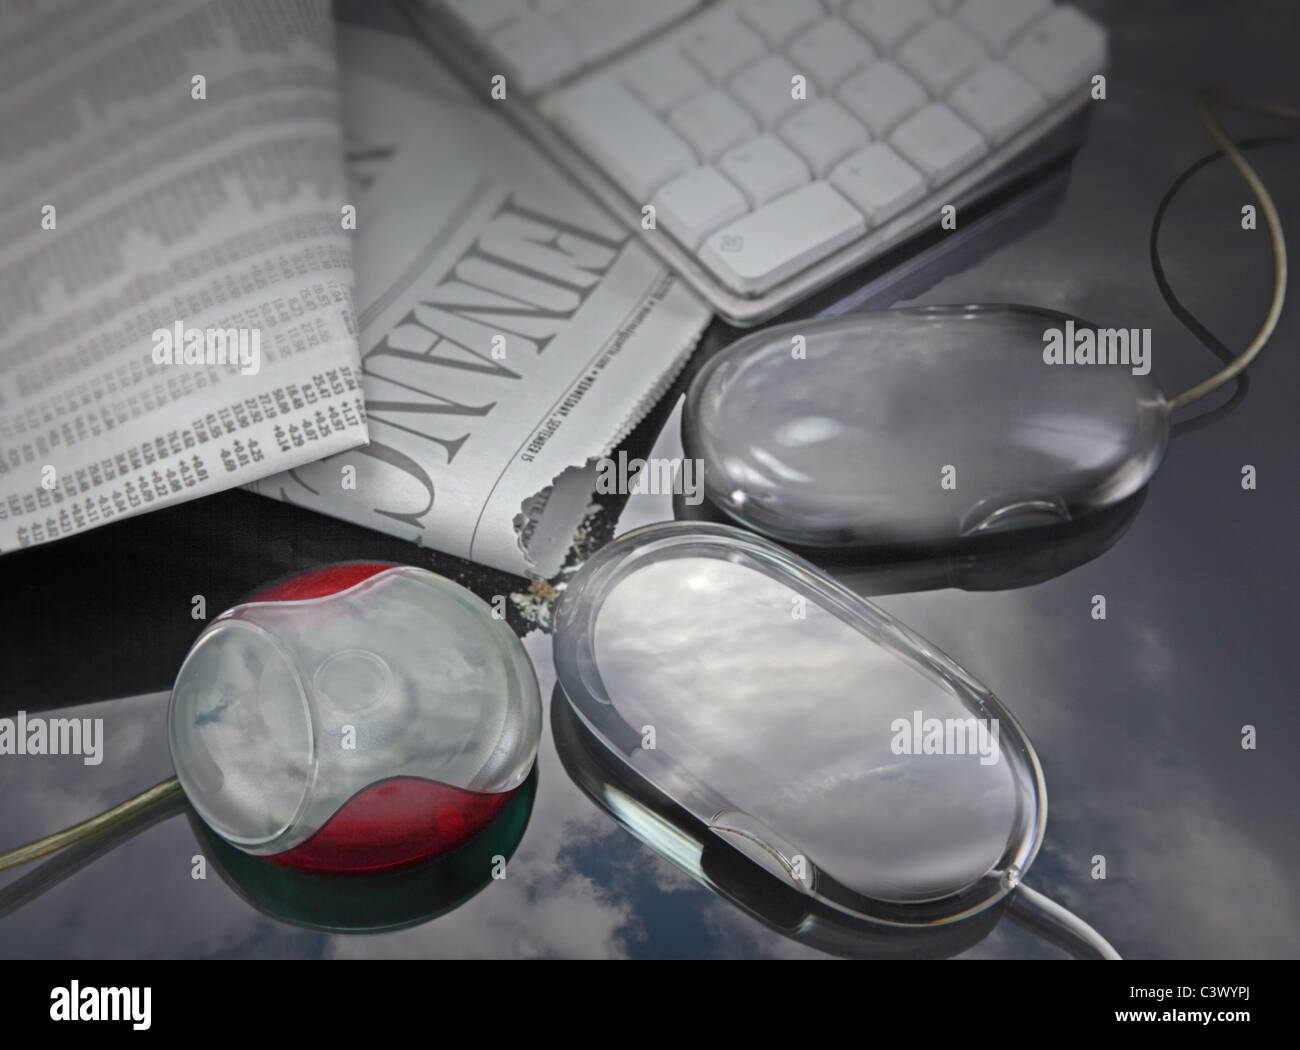 Drei Computer-Mäuse, die Zeitungsinformationen einspielen, um sie in digitale umzuwandeln. Stockfoto